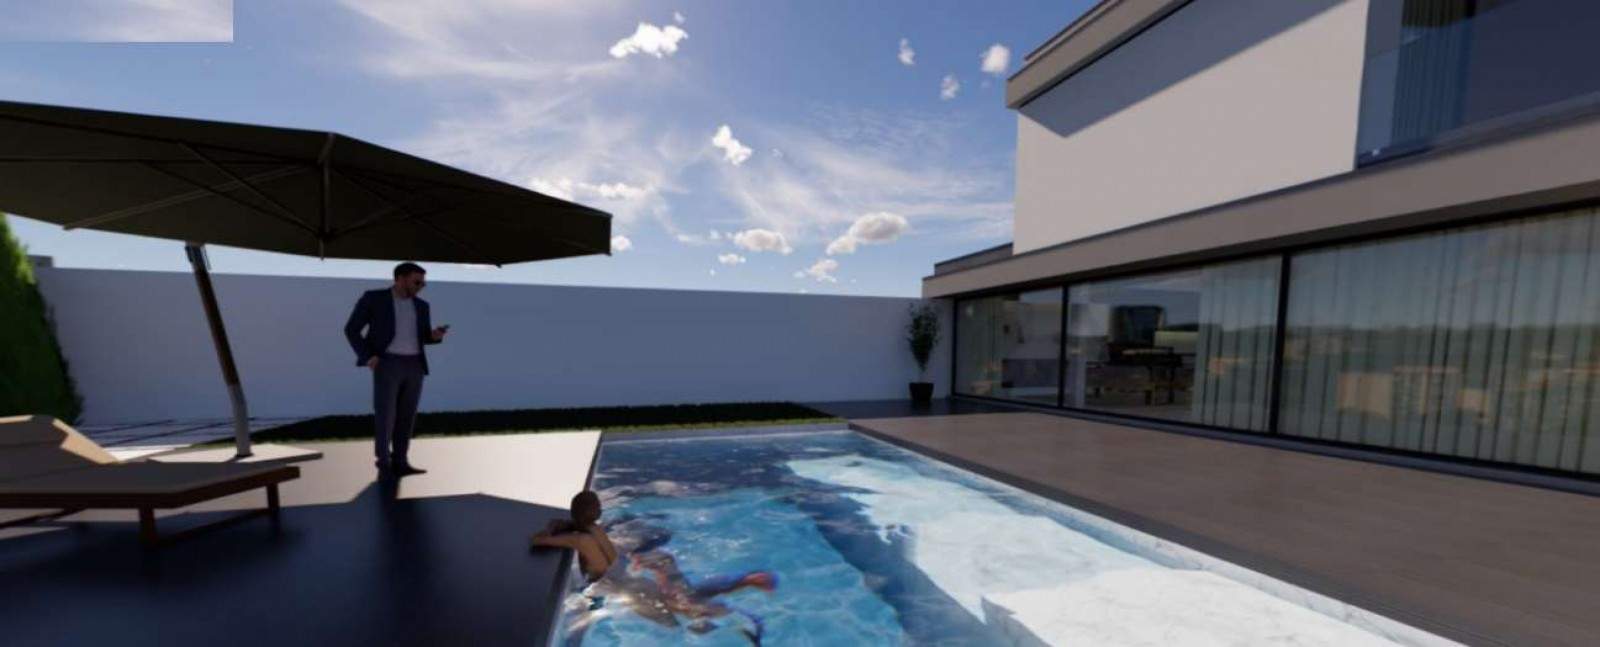 Verkauf: Freistehende einstöckige Villa im Bau, mit Garten und Pool, V. N. Gaia, Porto, Portugal_200773